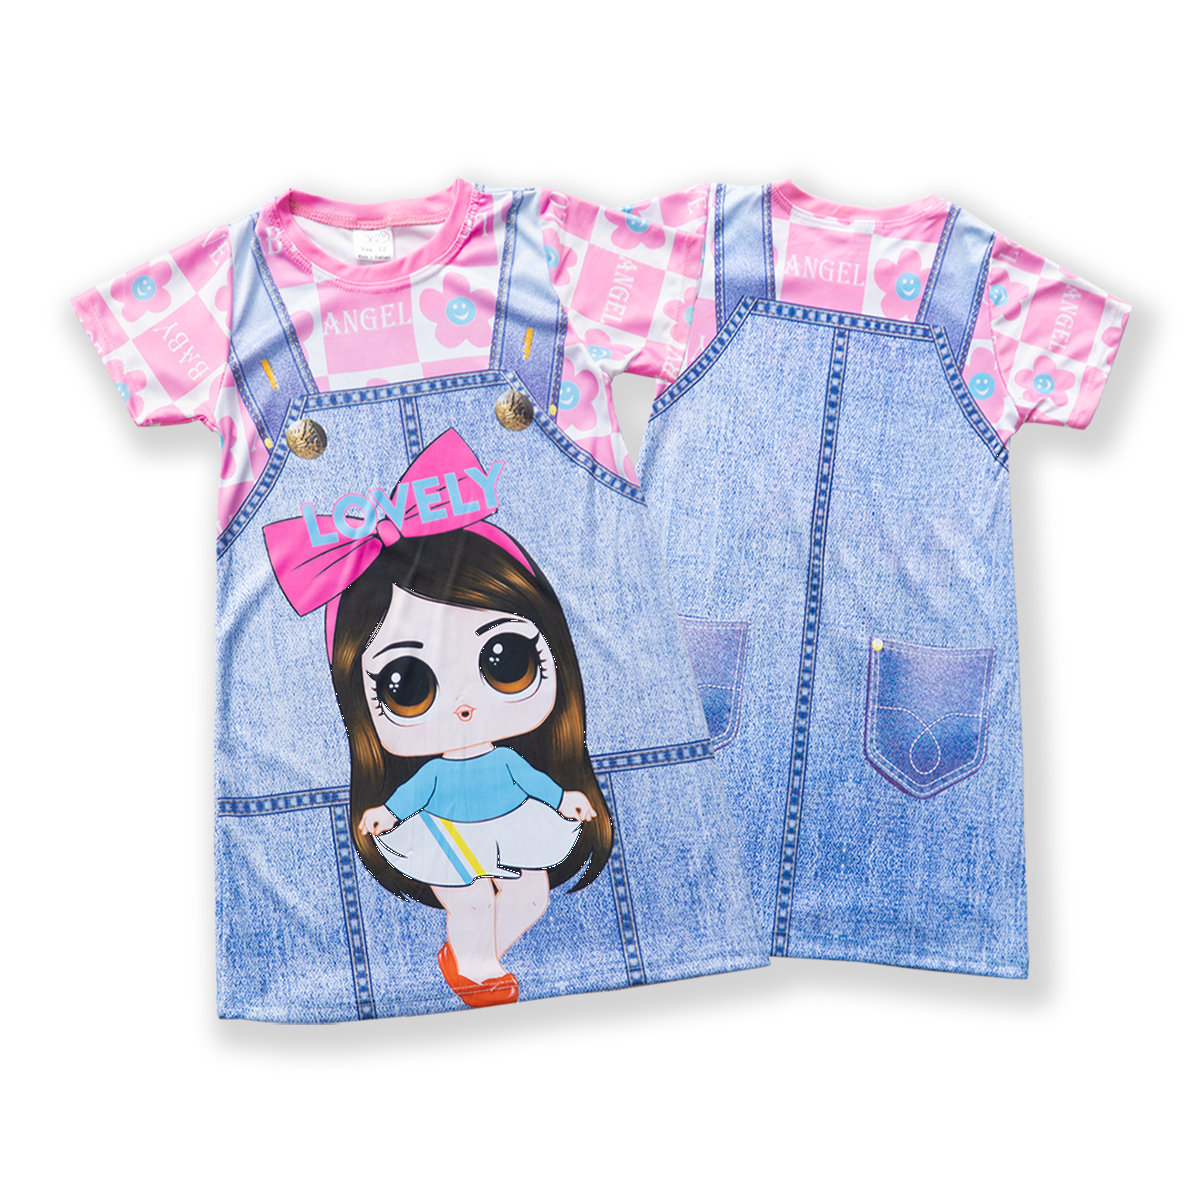 Combo 3 Váy bé gái giả yếm in hình 3D sọc ngang vải thun hiệu MIMYKID, giao ngẫu nhiên, đầm trẻ em - LMTK-V02